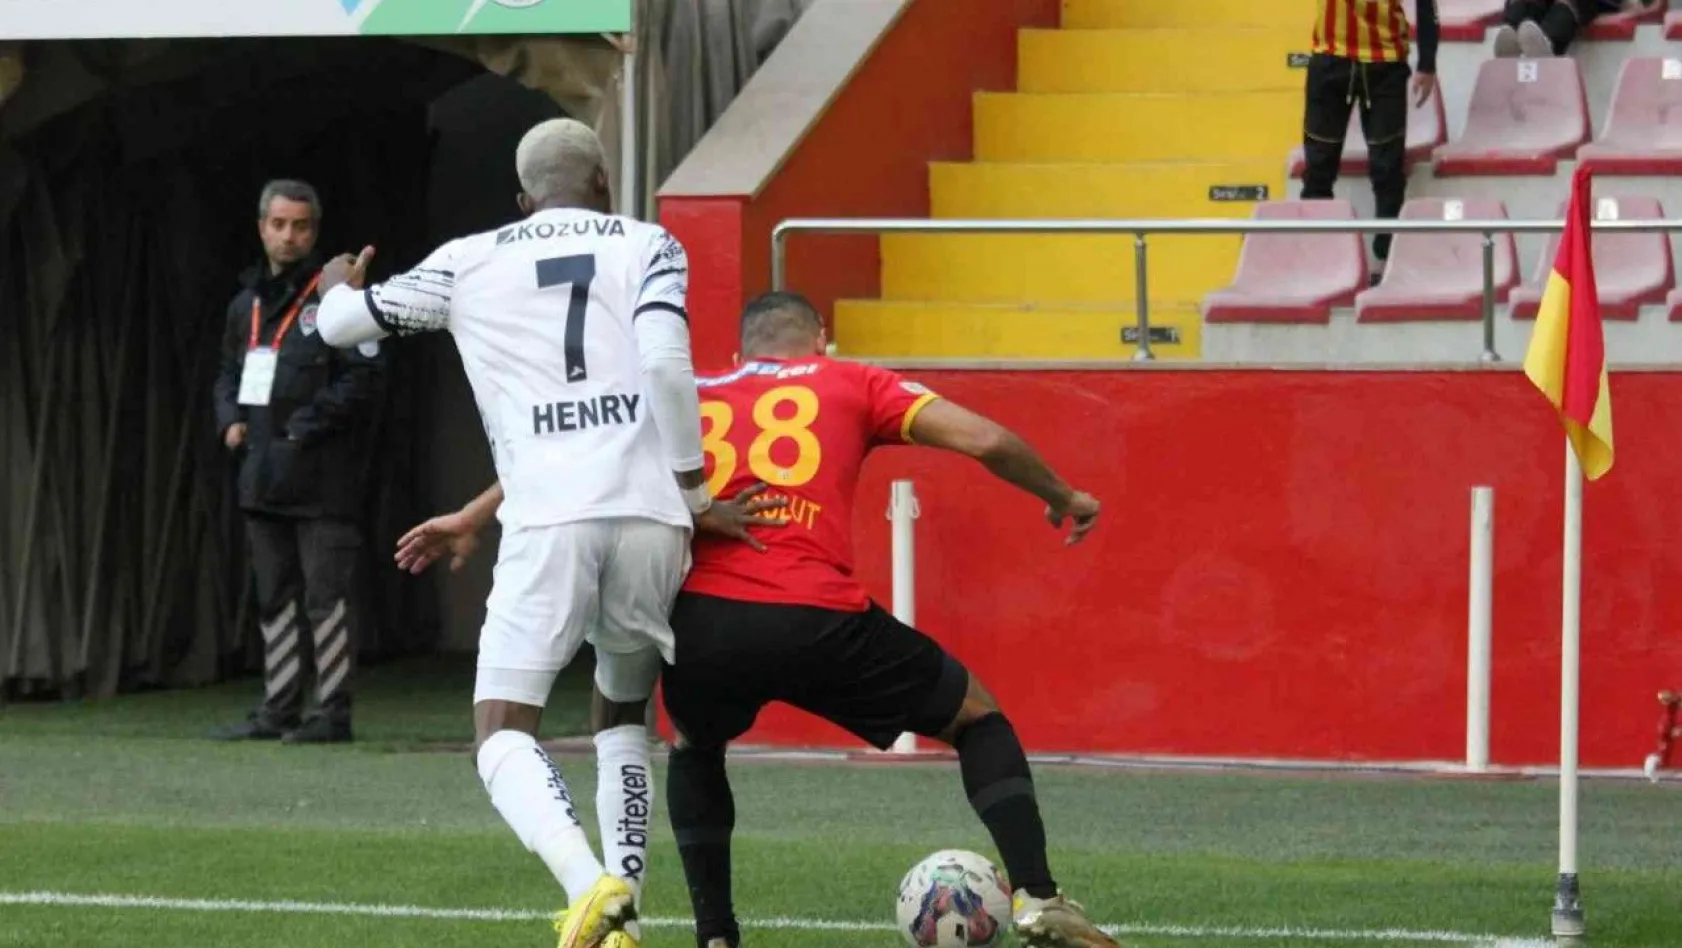 Spor Toto Süper Lig: Kayserispor: 0 - Adana Demirspor: 1 (Maç devam ediyor)